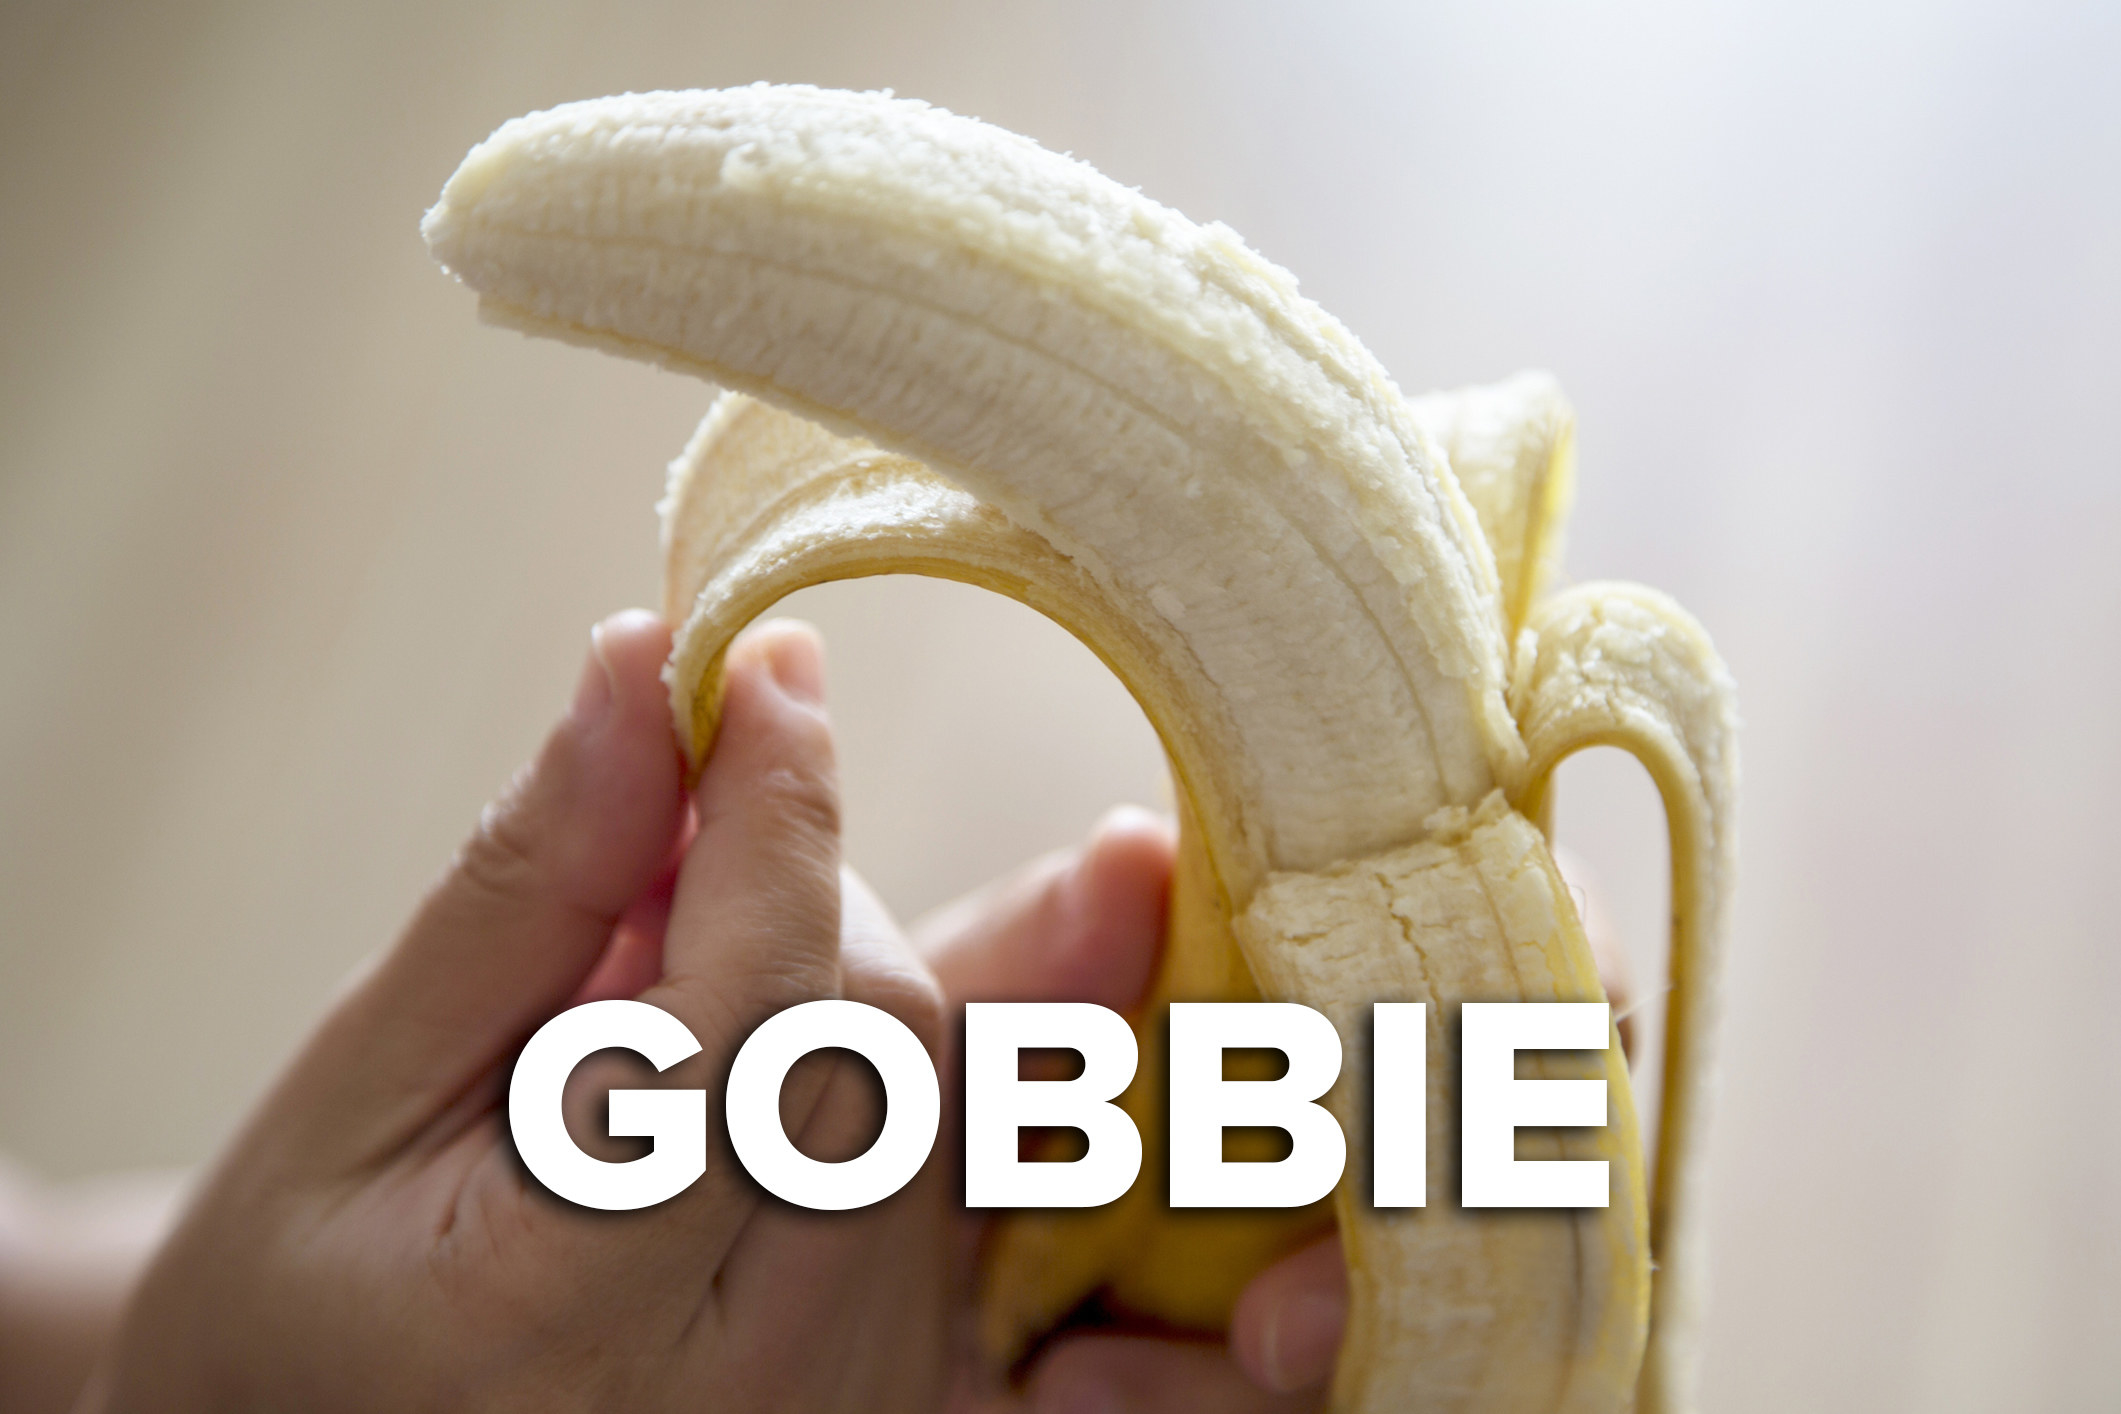 A hand peeling a banana